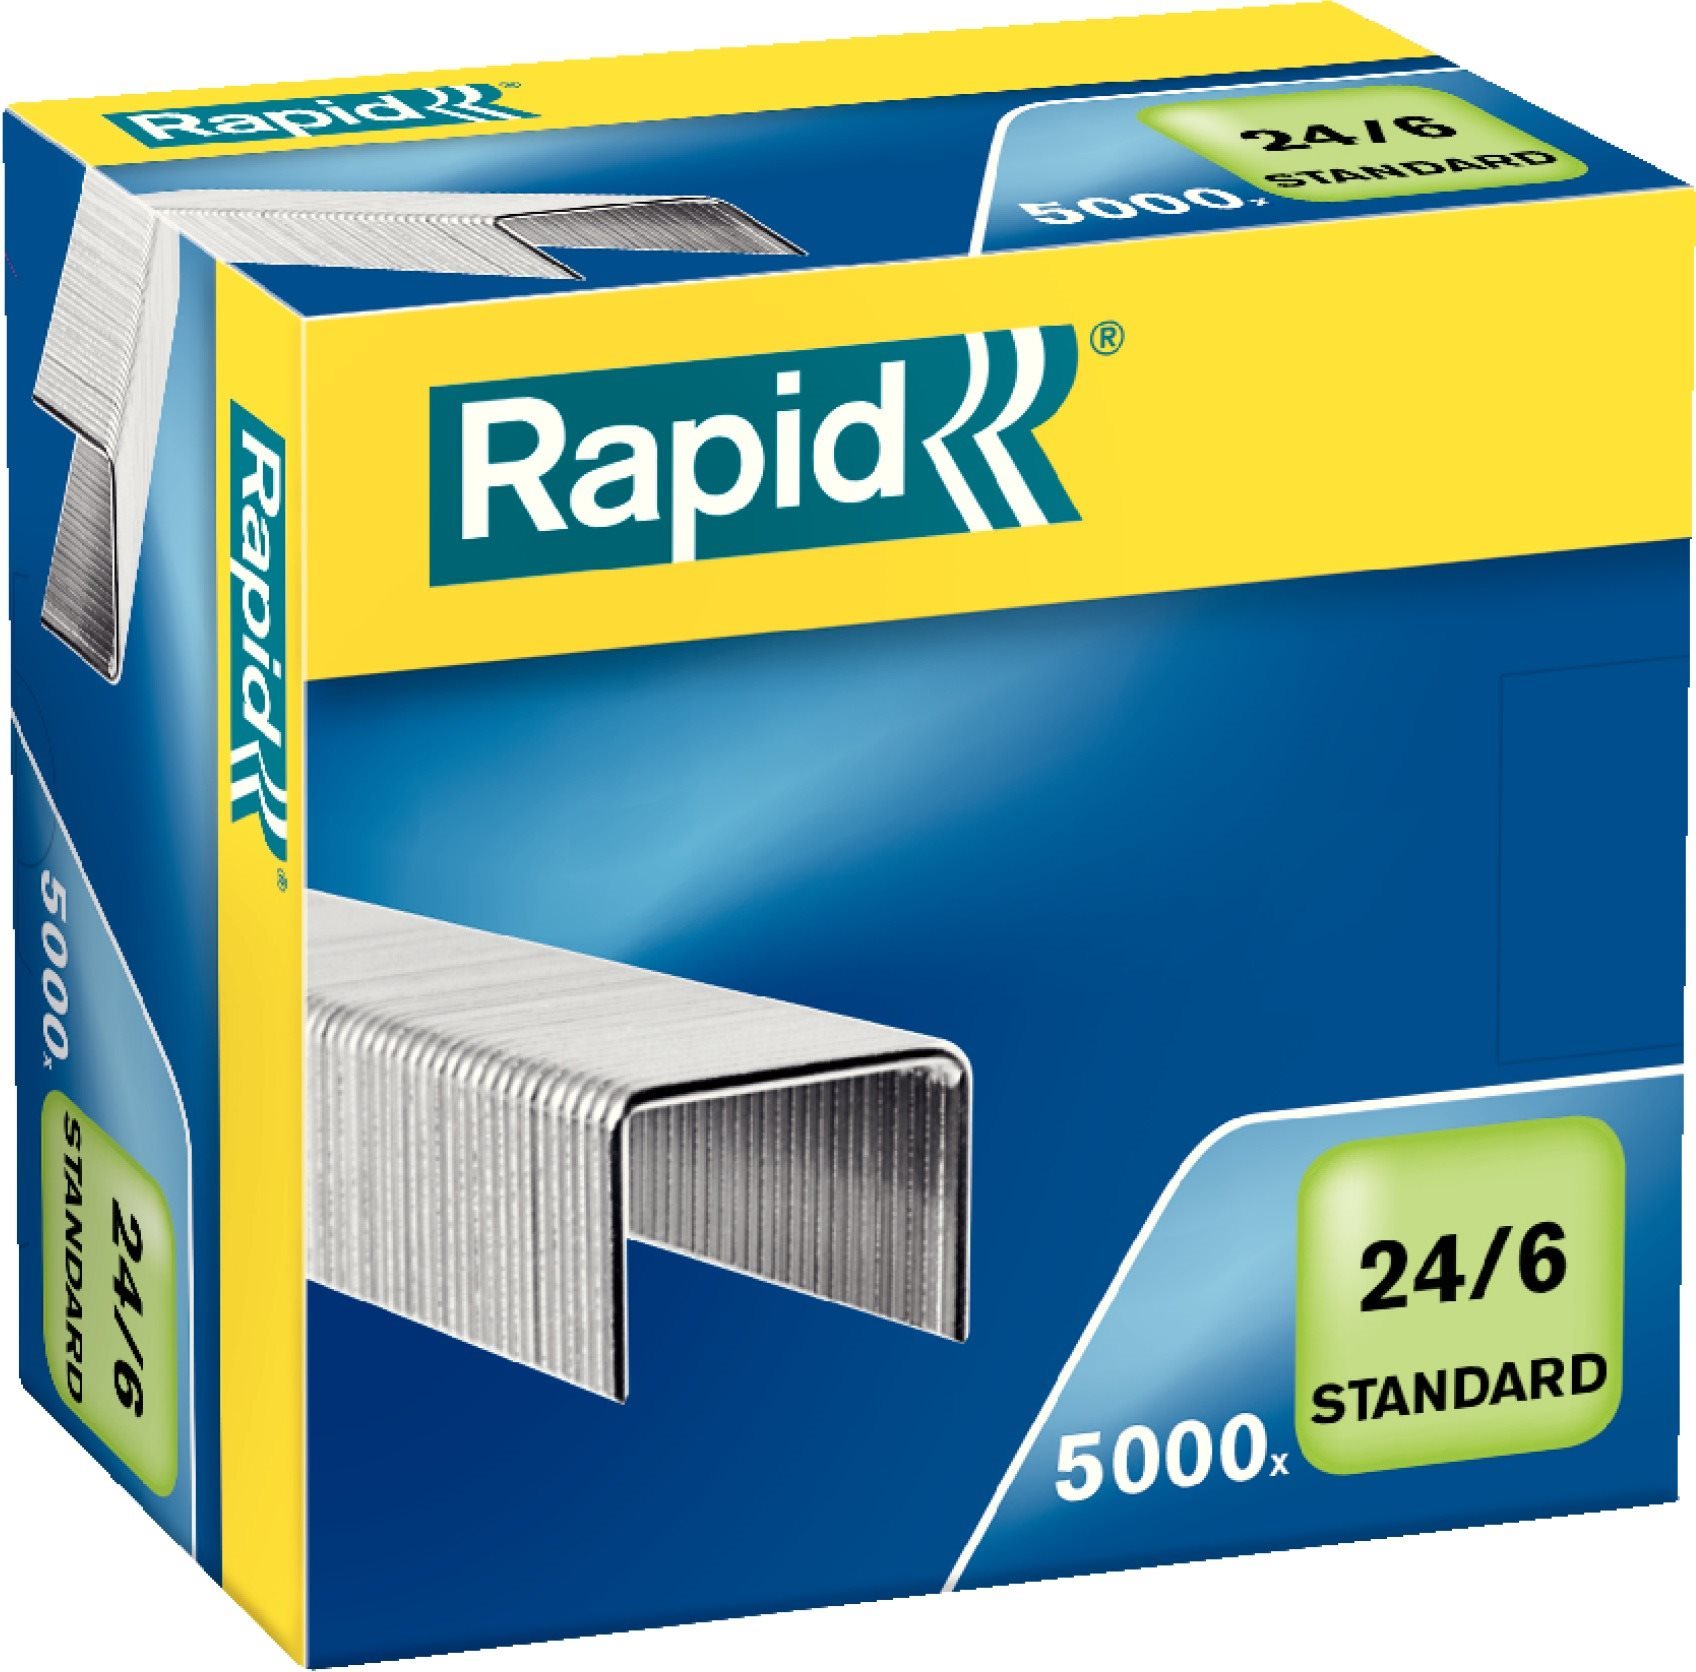 RAPID Standard 24/6 - 5000 darab / csomag